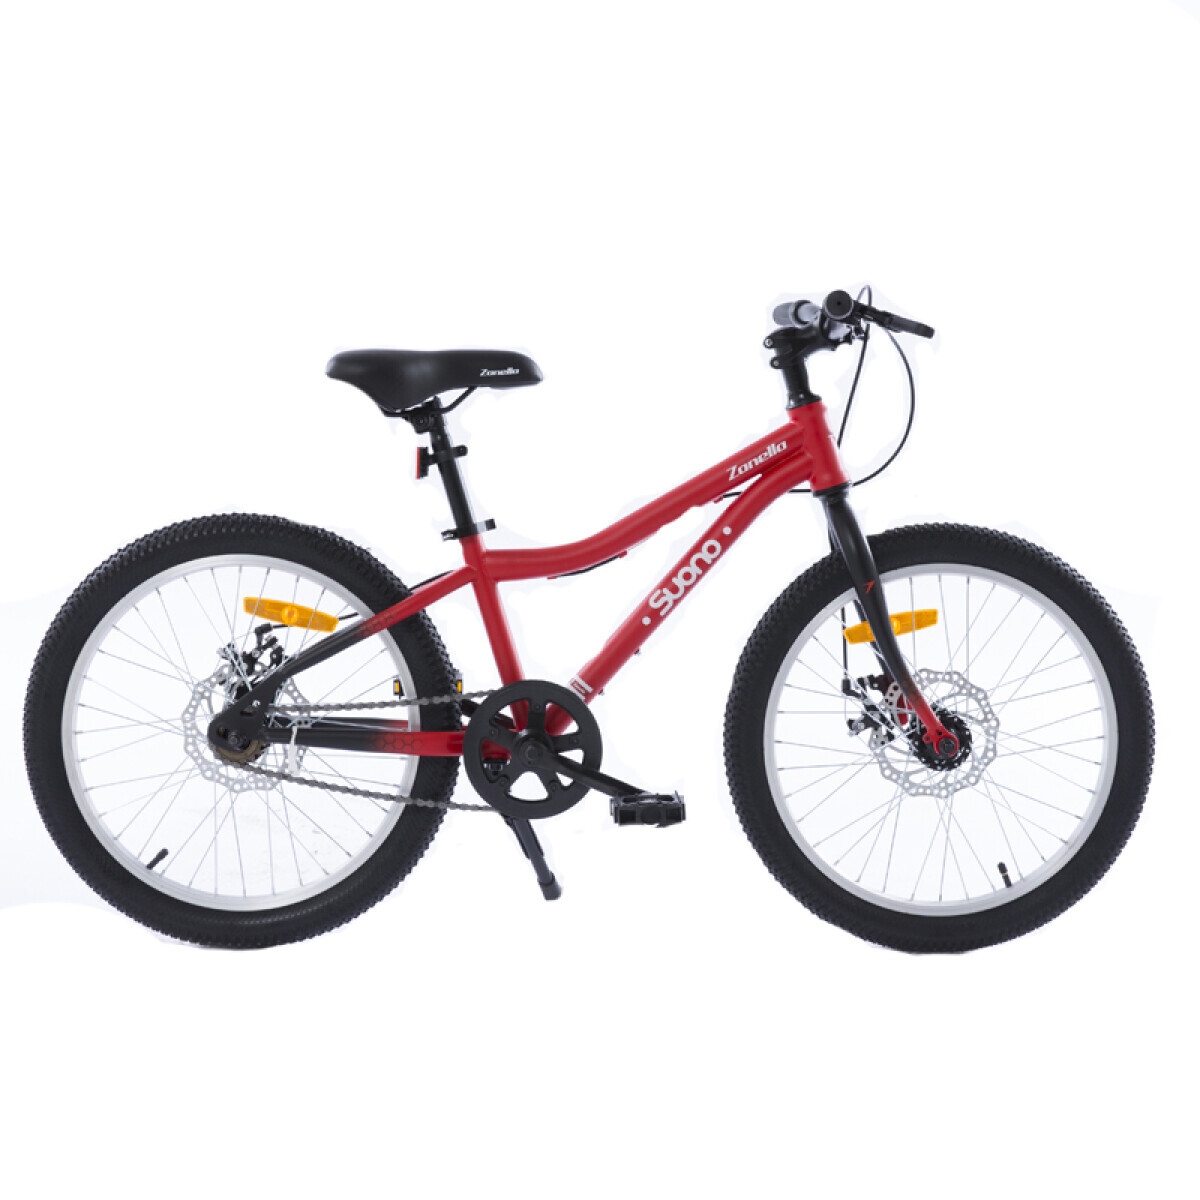 Bicicleta infantil Zanella Suono rod 20 Roja - 001 